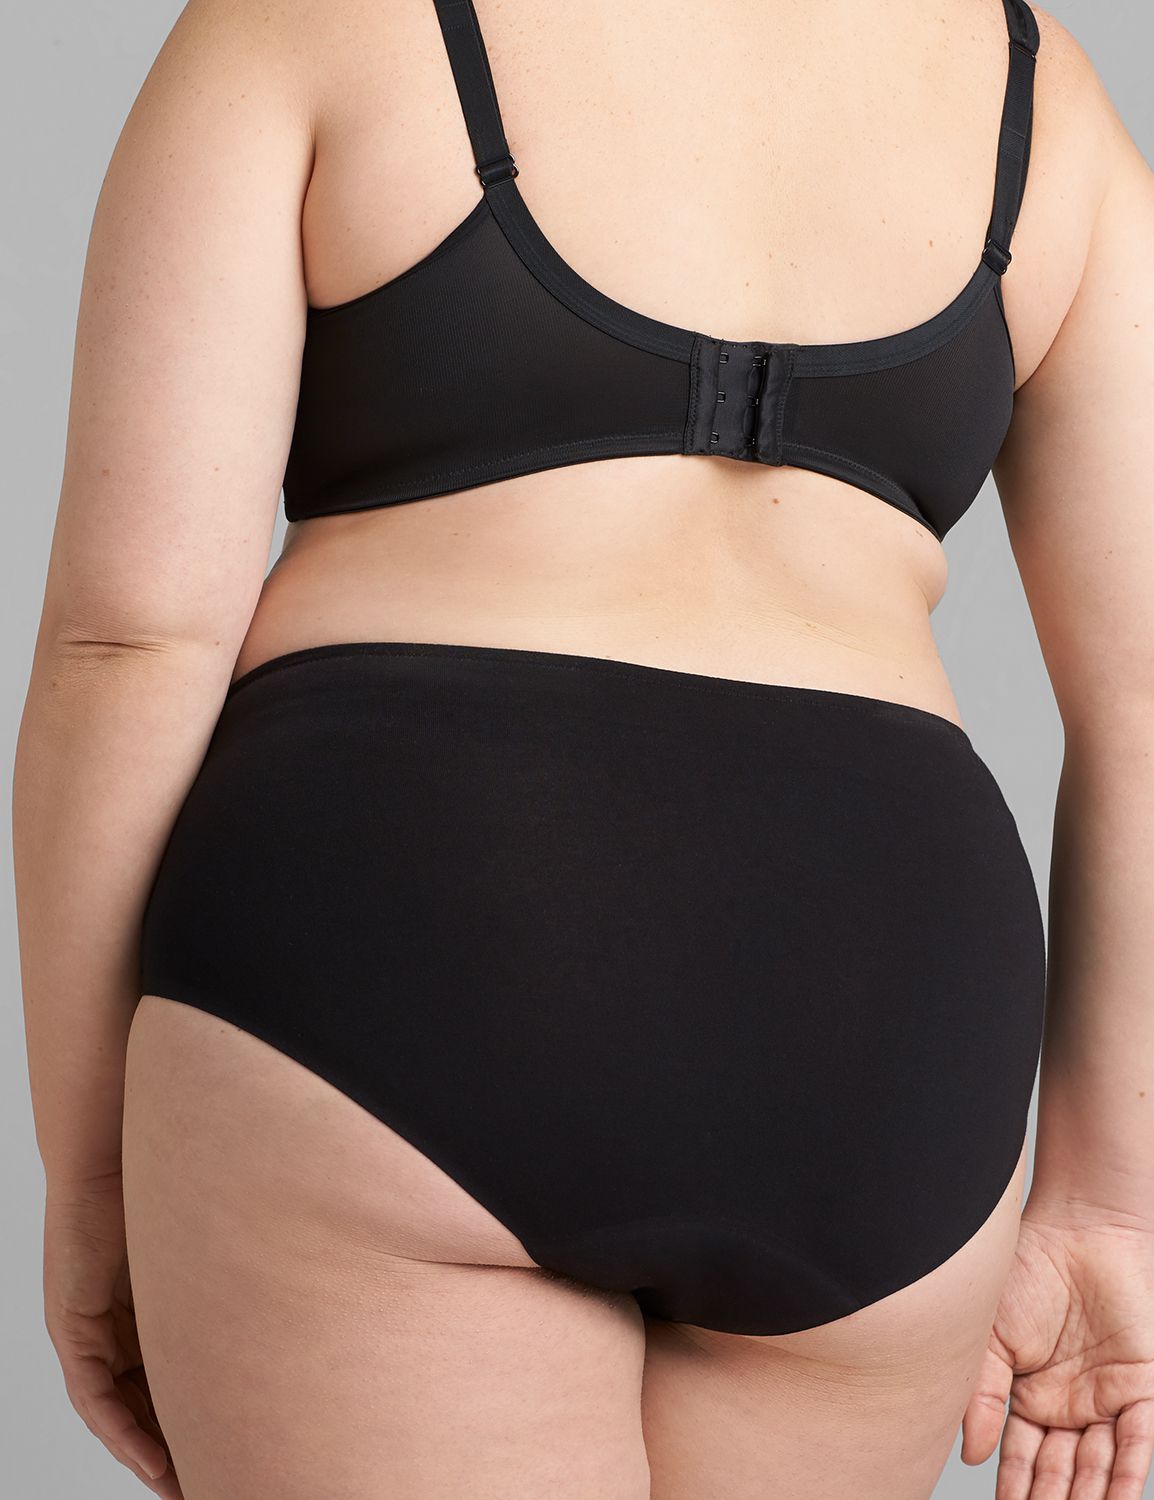 CareDone Women's Comfort Reusable, Absorbent Period Bikini Panties